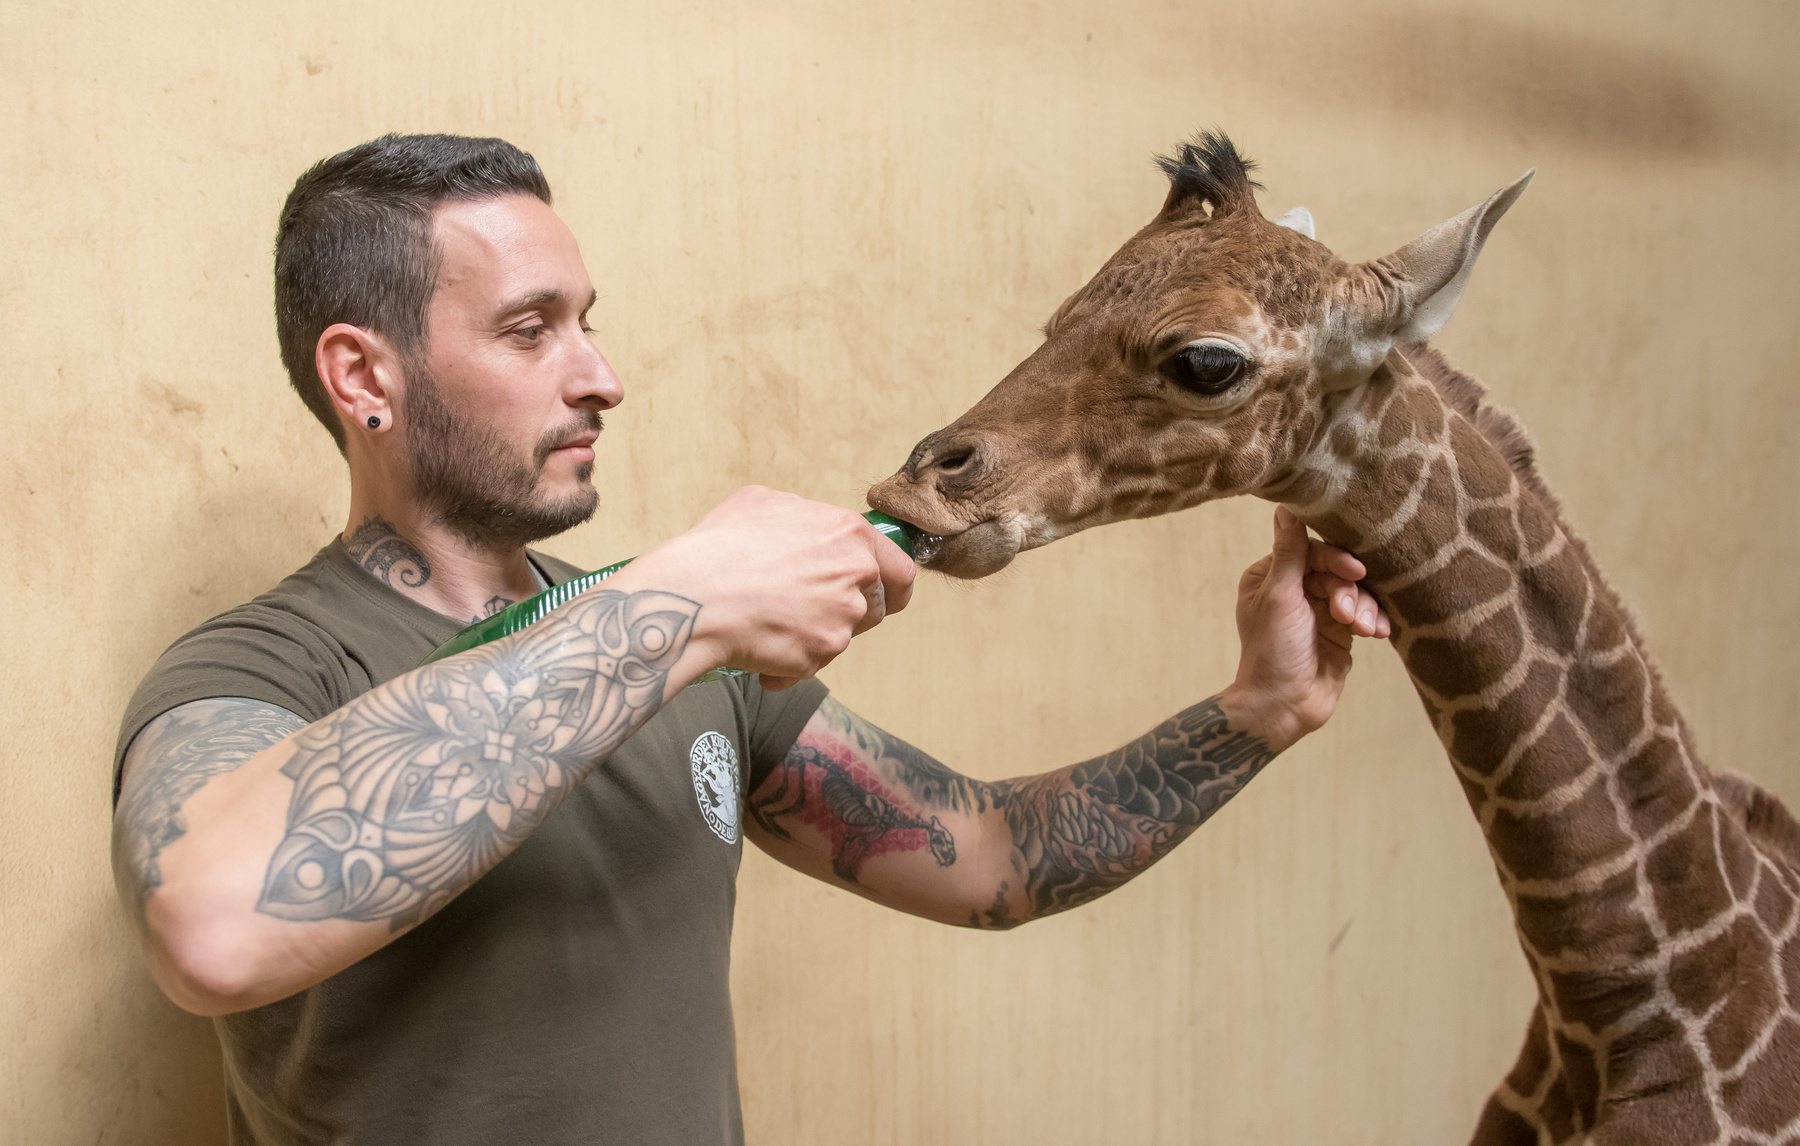 Recés zsiráfbébi született a Debreceni Állatkertben